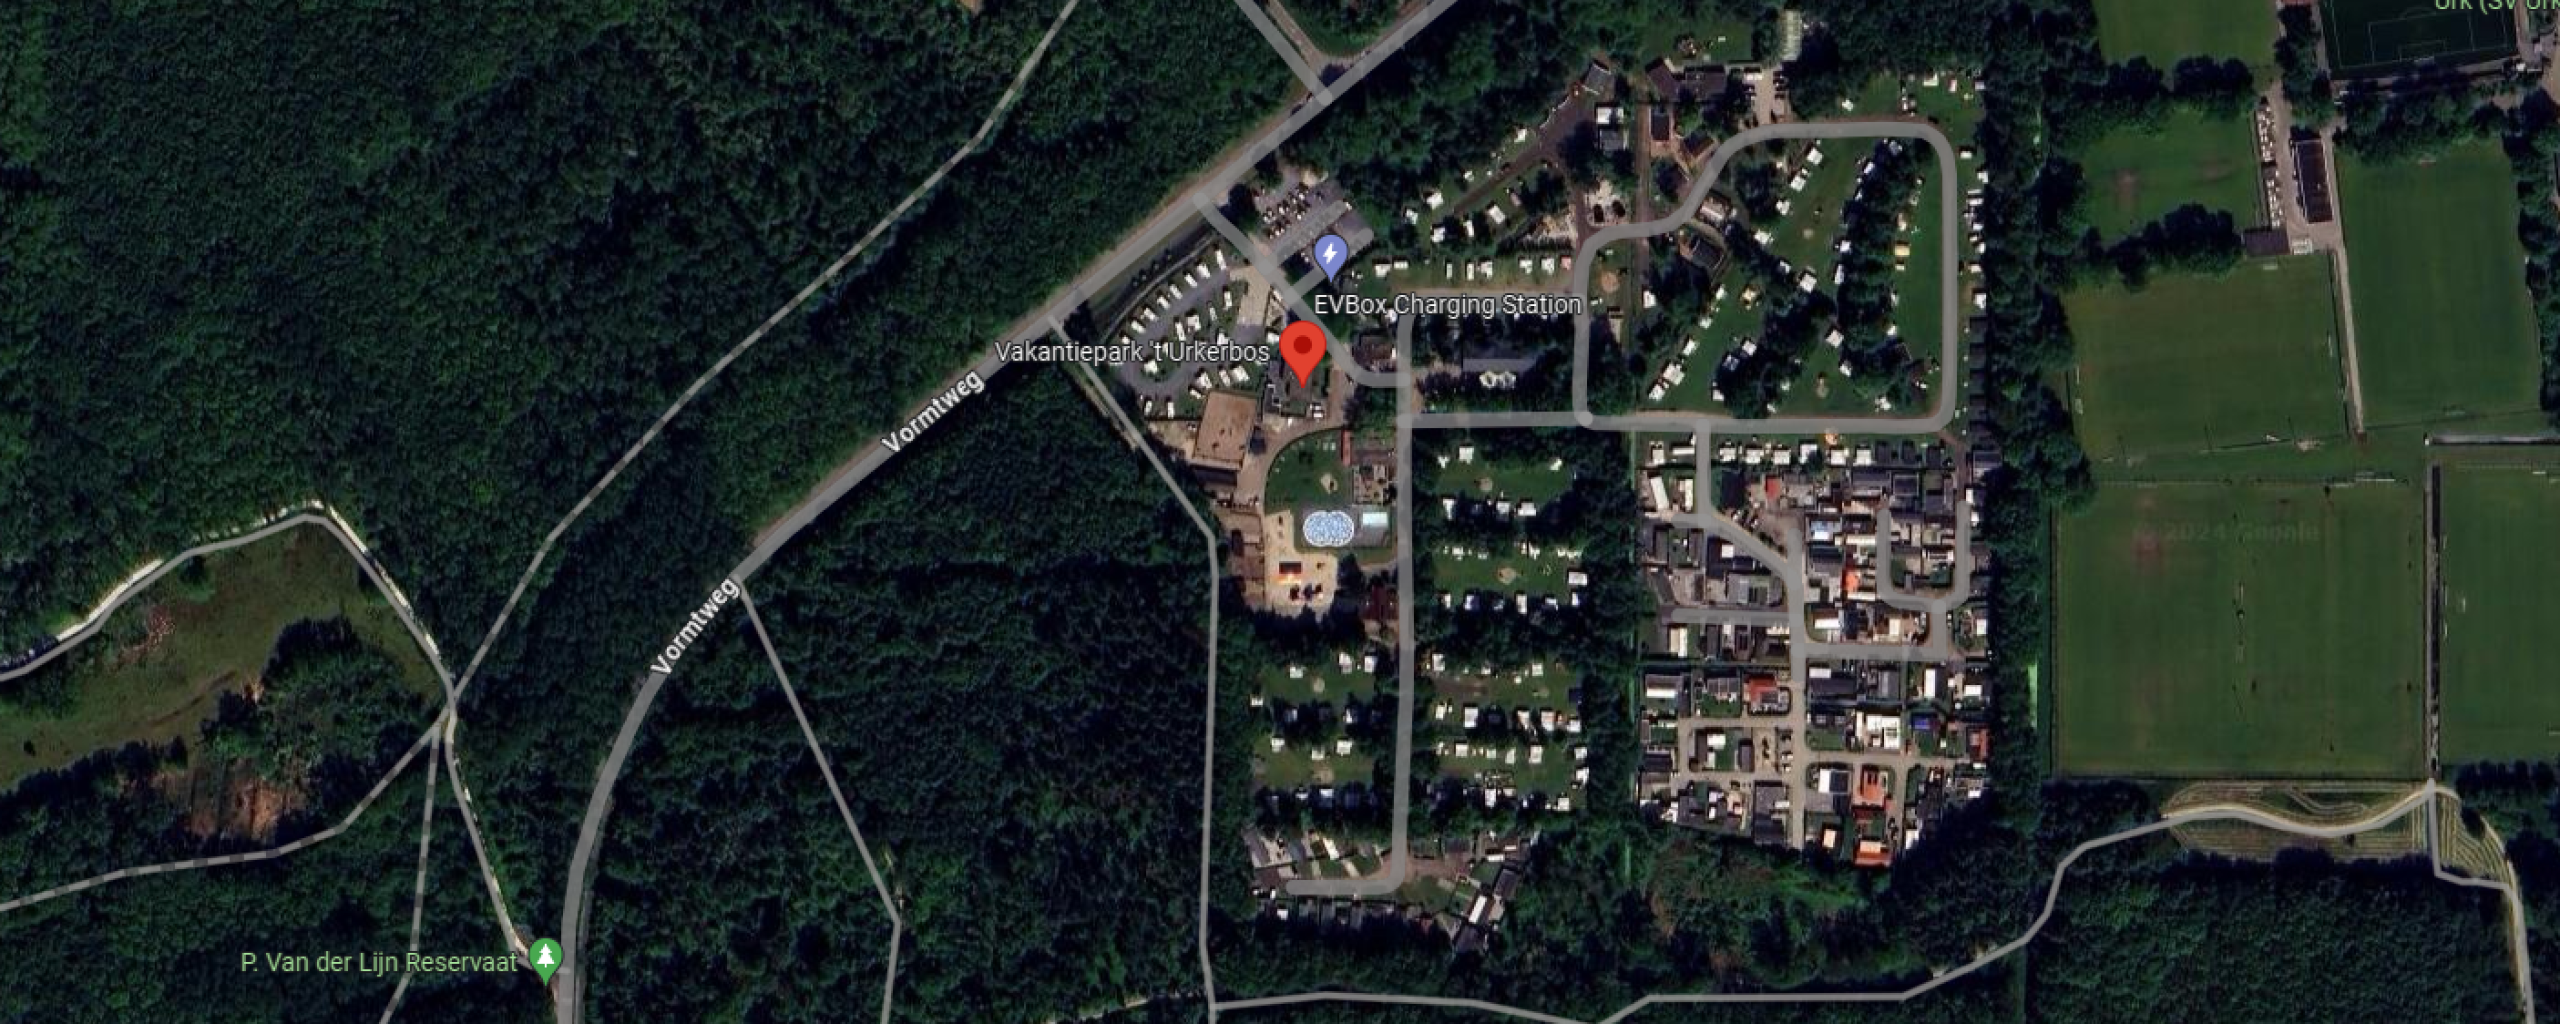 Google Maps afbeelding van de Urker camping en een deel van het Urkerbos